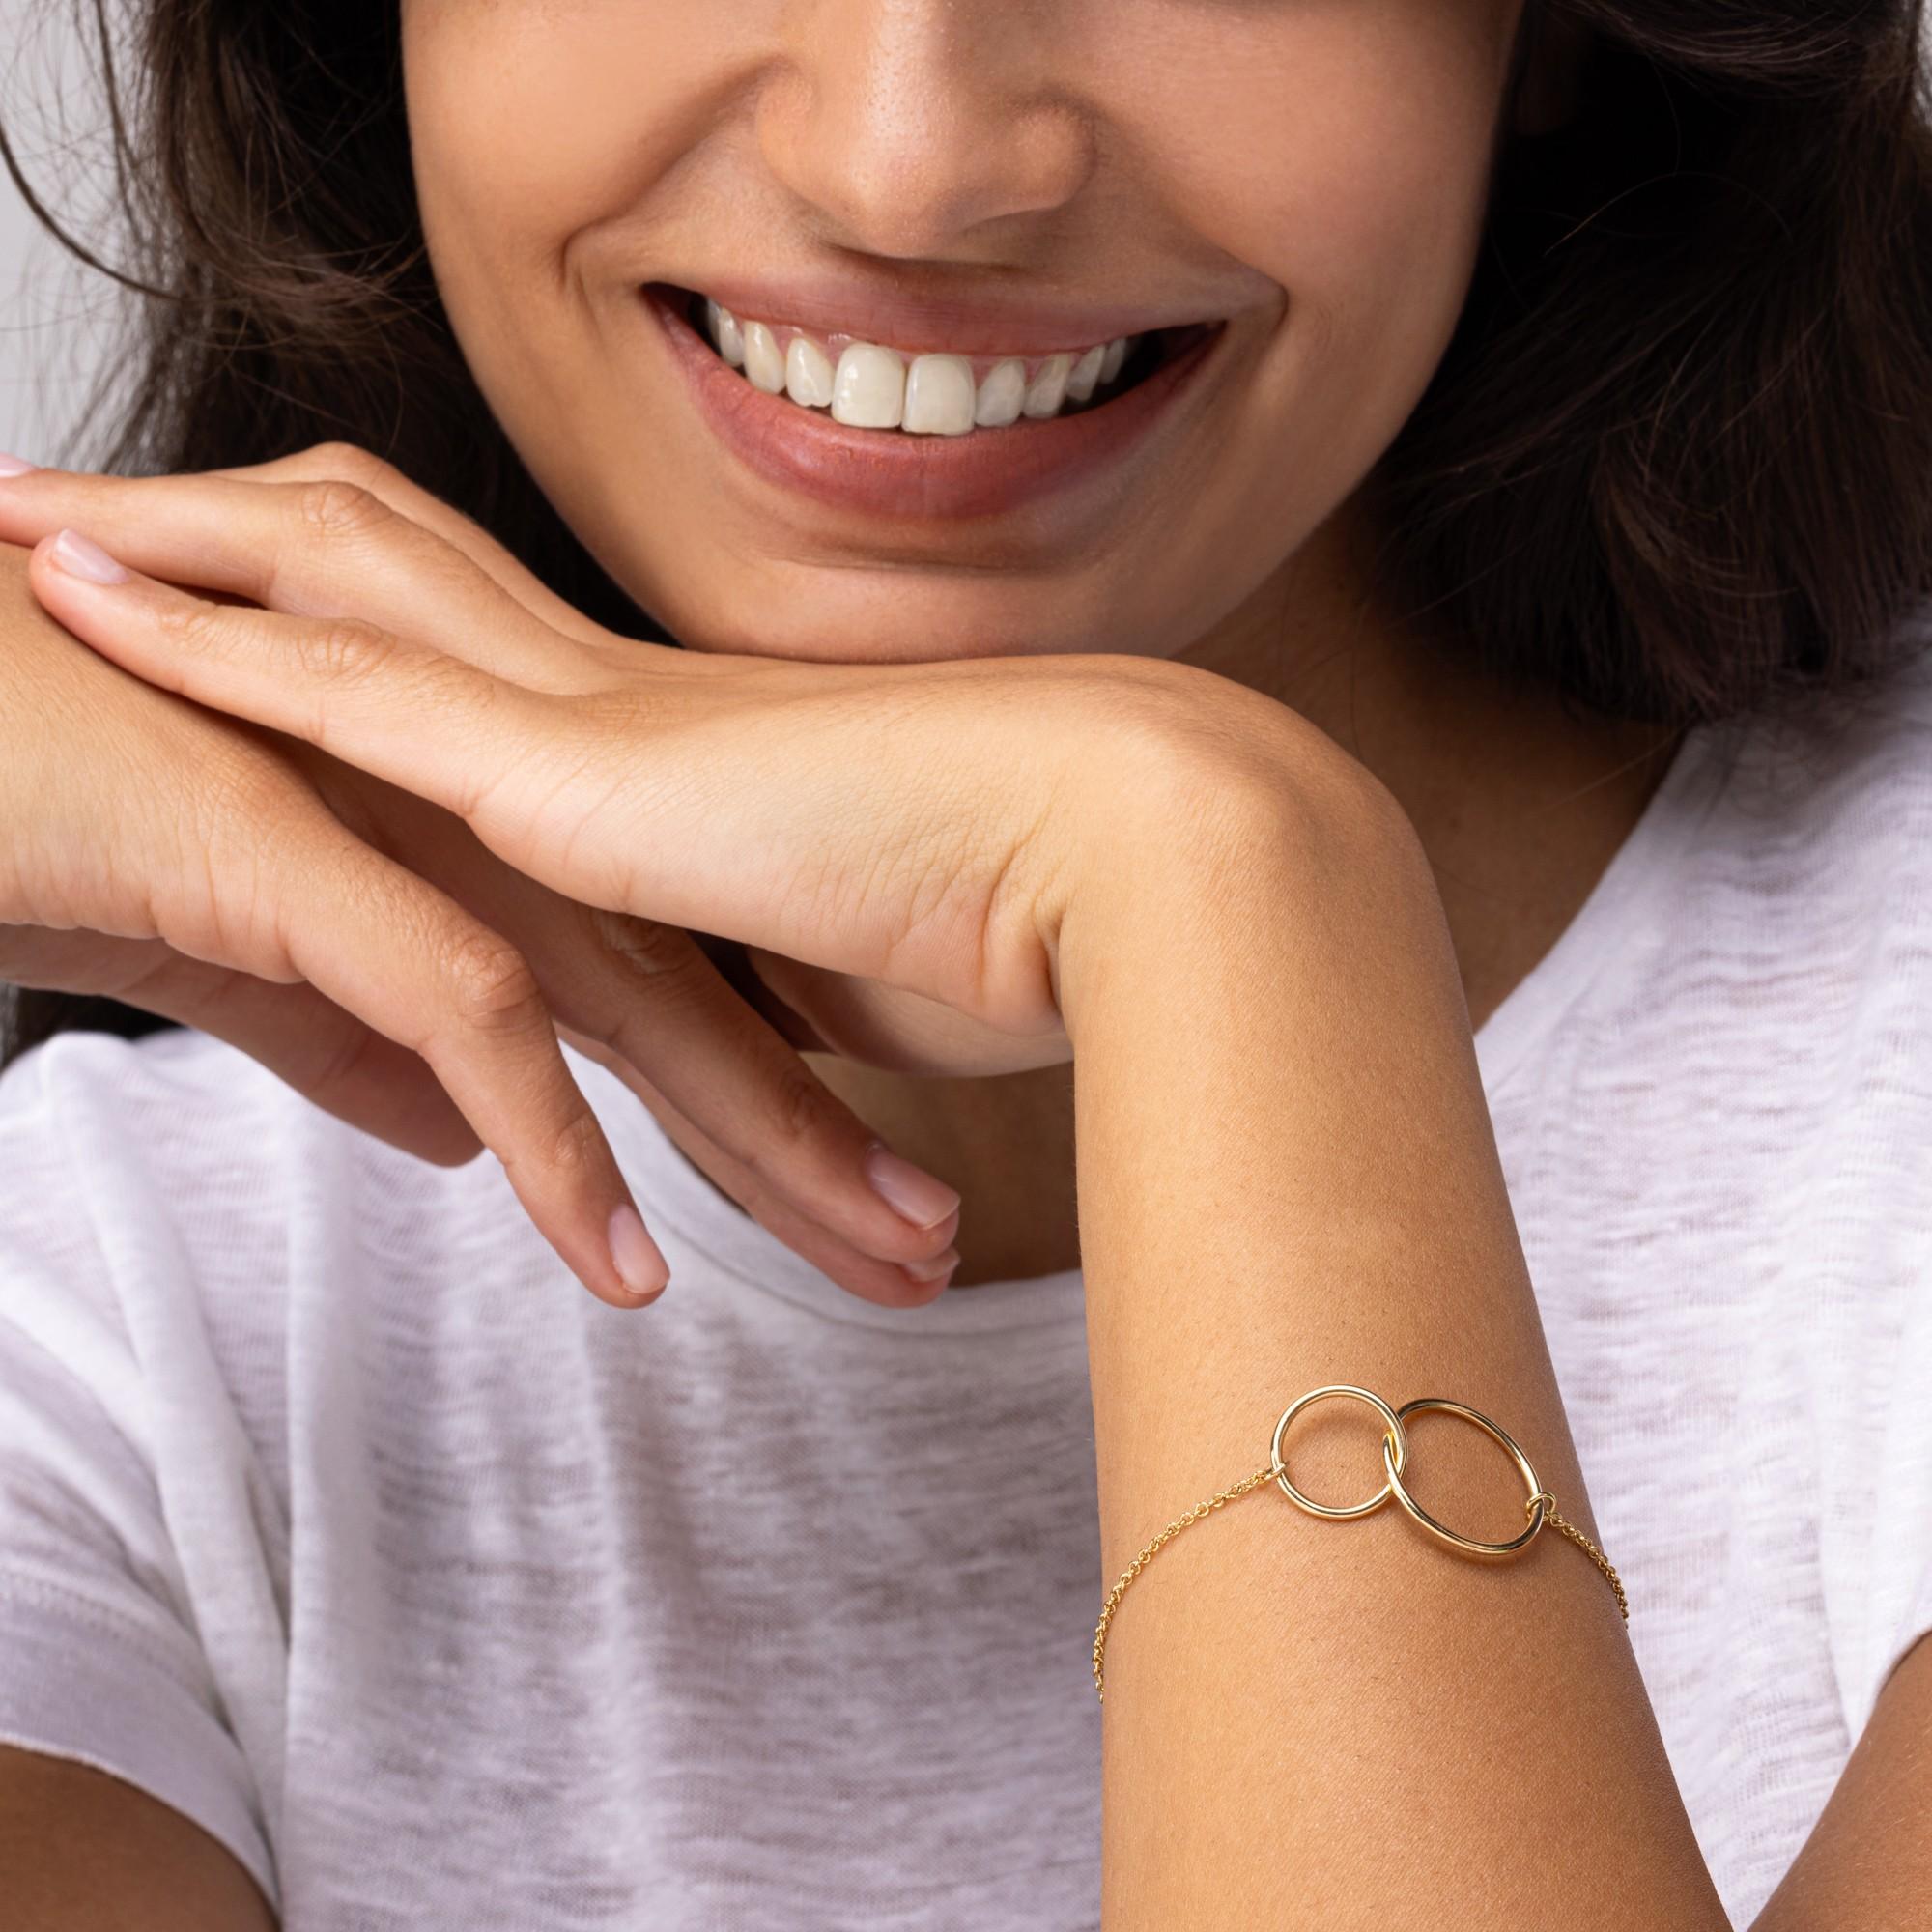 Collectional Jona, fait à la main en Italie, bracelet en chaîne d'or jaune 18 carats centré sur deux anneaux d'or imbriqués.
Les bijoux Alex Jona se distinguent, non seulement par leur design particulier et par l'excellente qualité des pierres